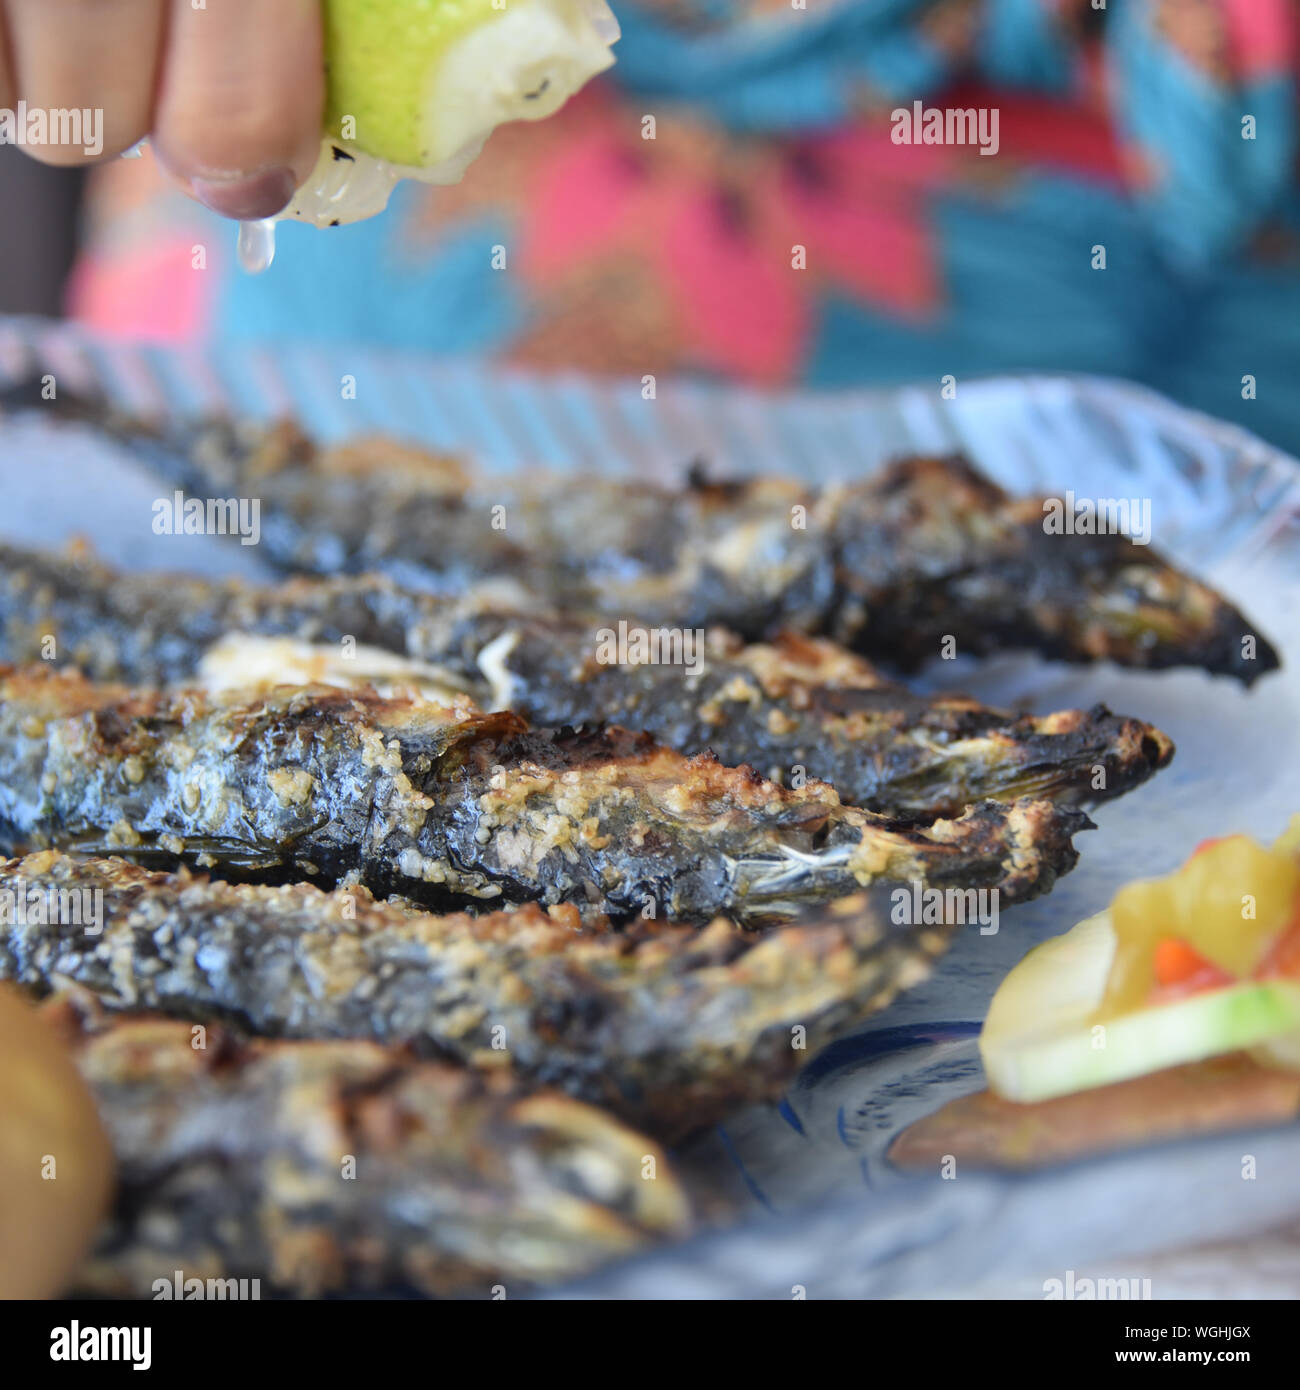 Lison, Portugal : un diner tire le jus de citron sur des sardines grillées Banque D'Images